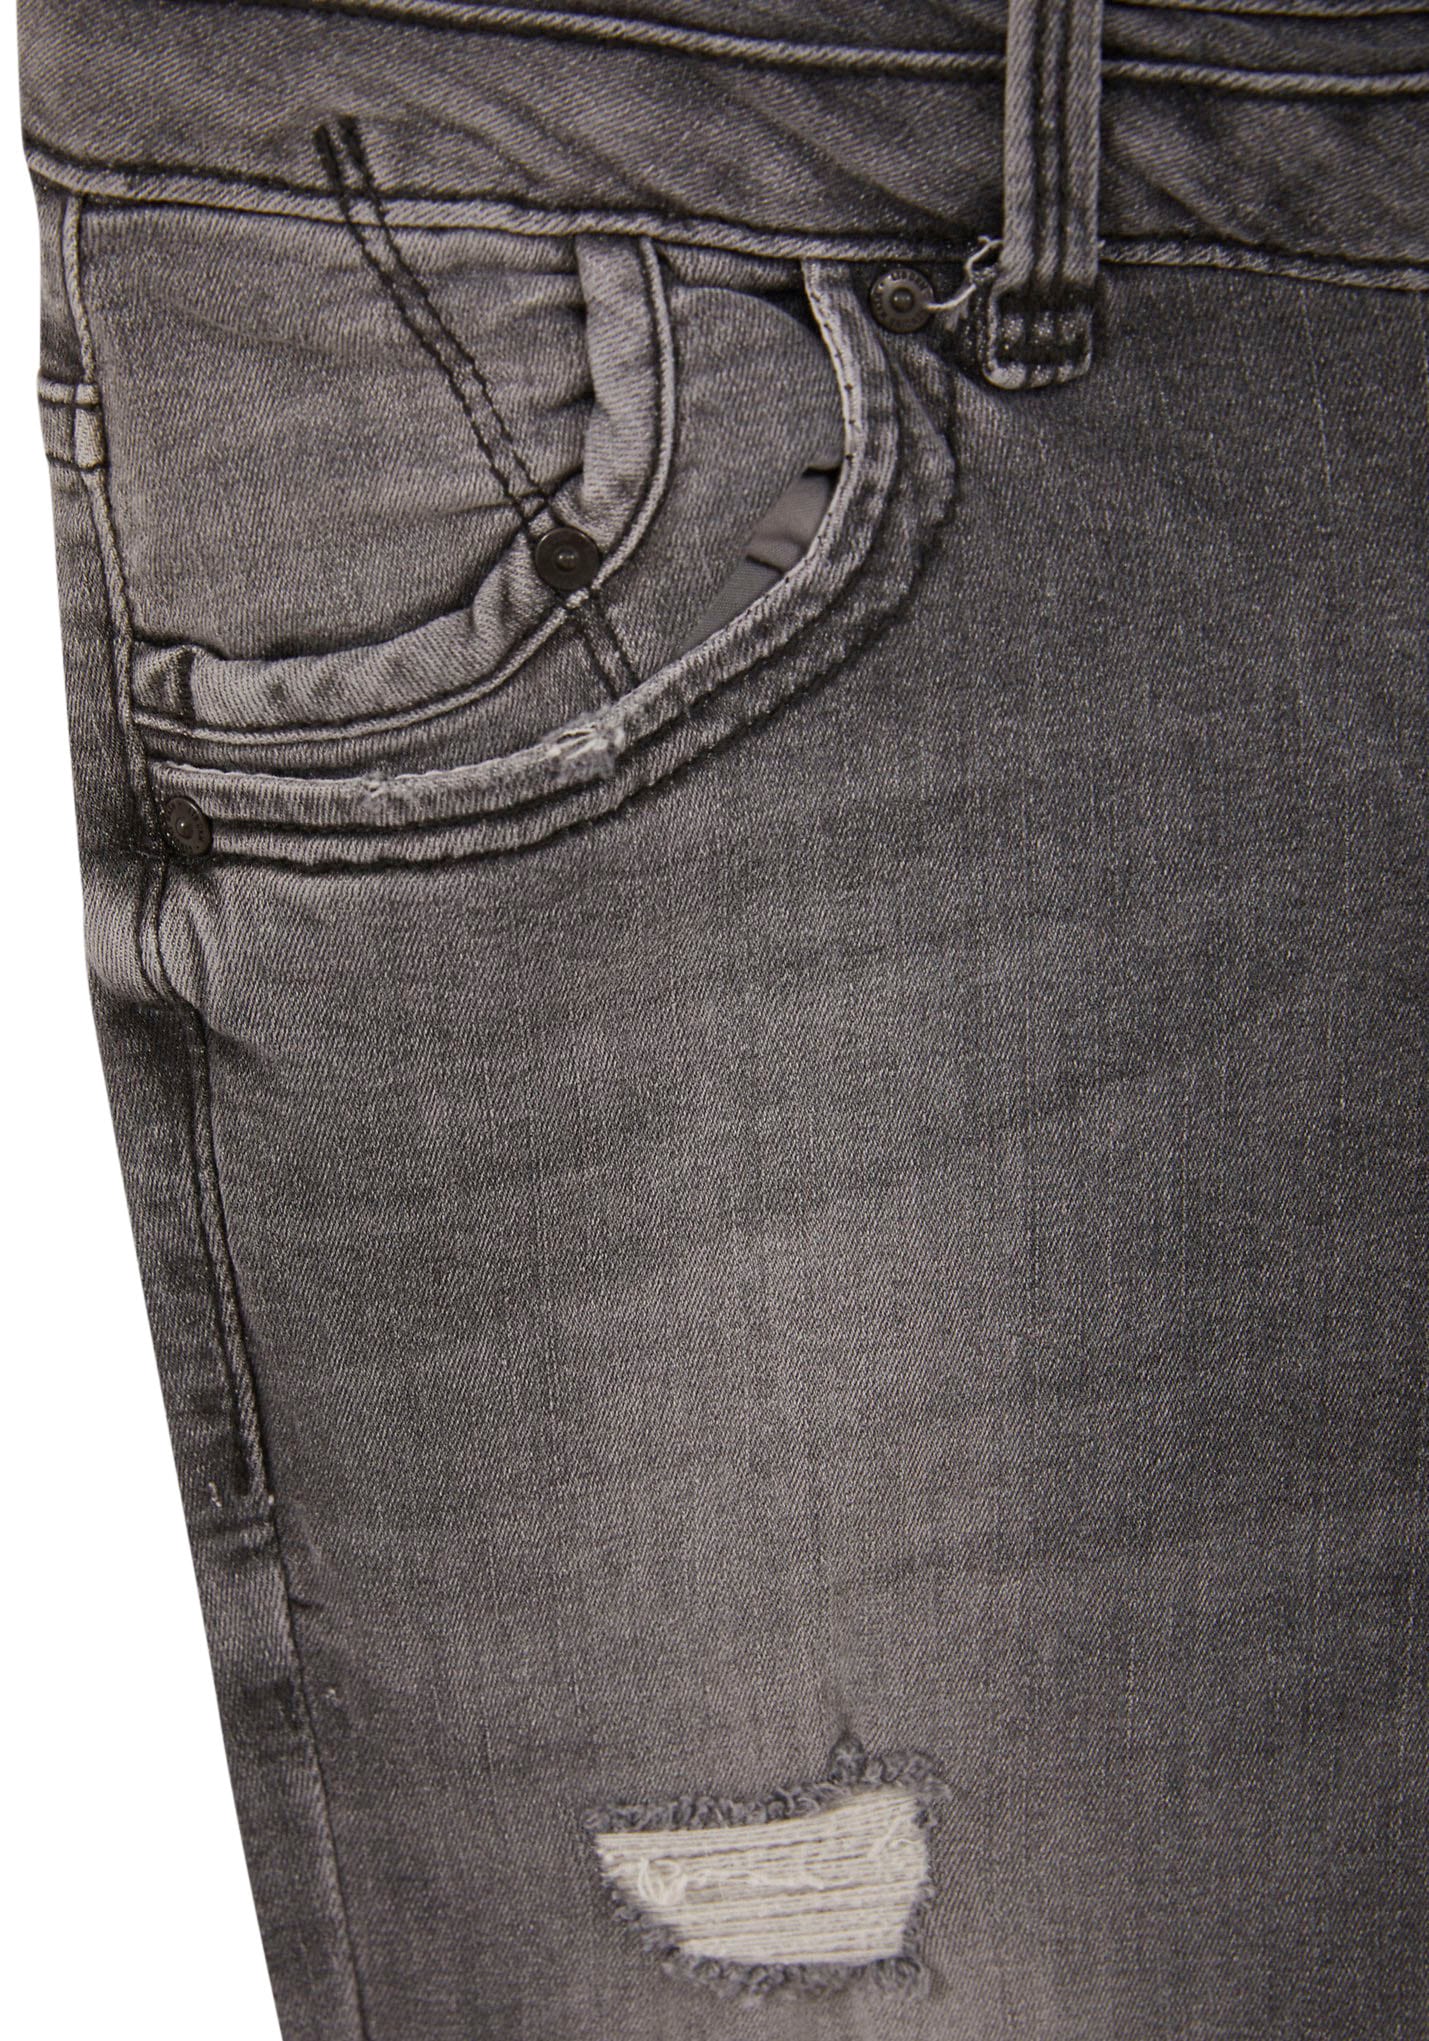 LTB Skinny-fit-Jeans »JULITAXSMU«, mit extra-engem Bein, niedriger Leibhöhe und Stretch-Anteil - EXKLUSIV